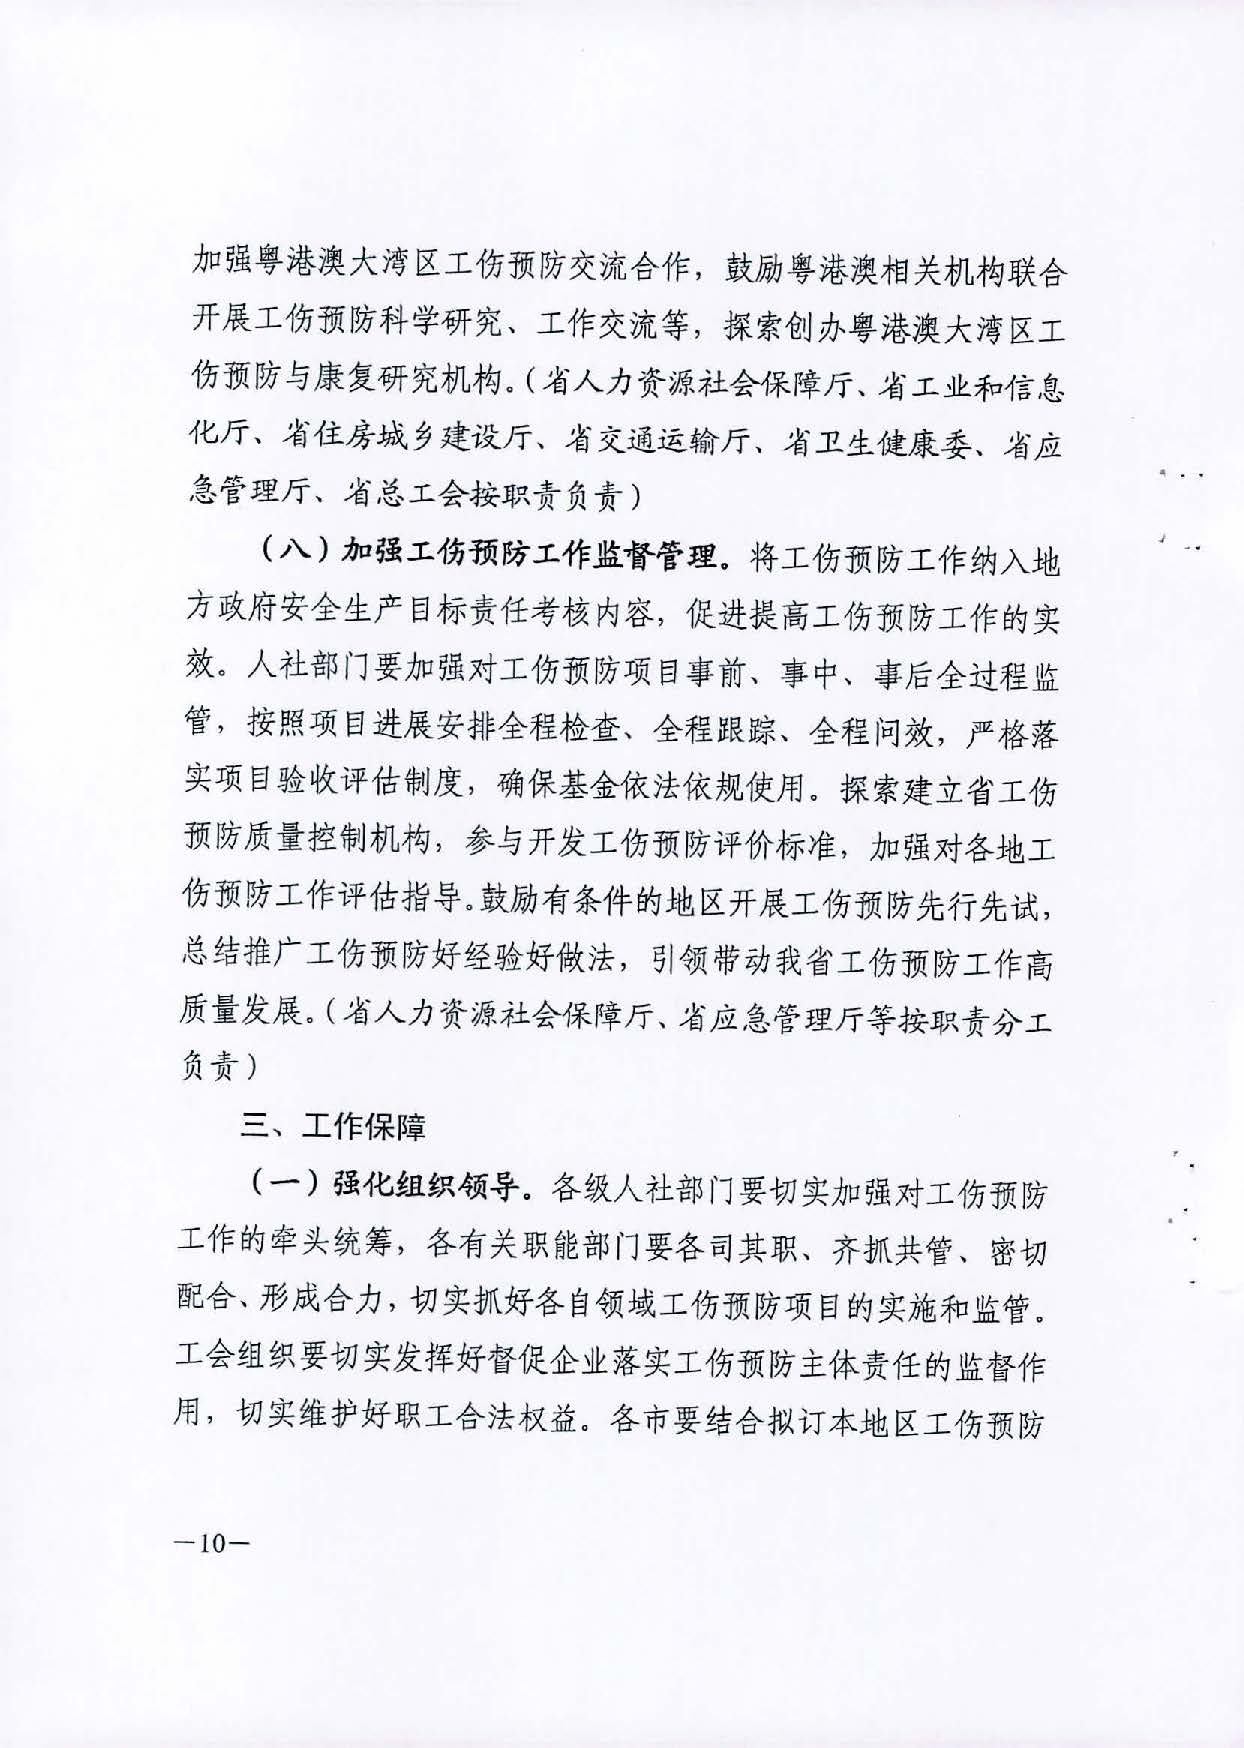 转发关于印发广东省工伤预防五年行动计划实施方案 (2021-2025年)的通知_页面_12.jpg